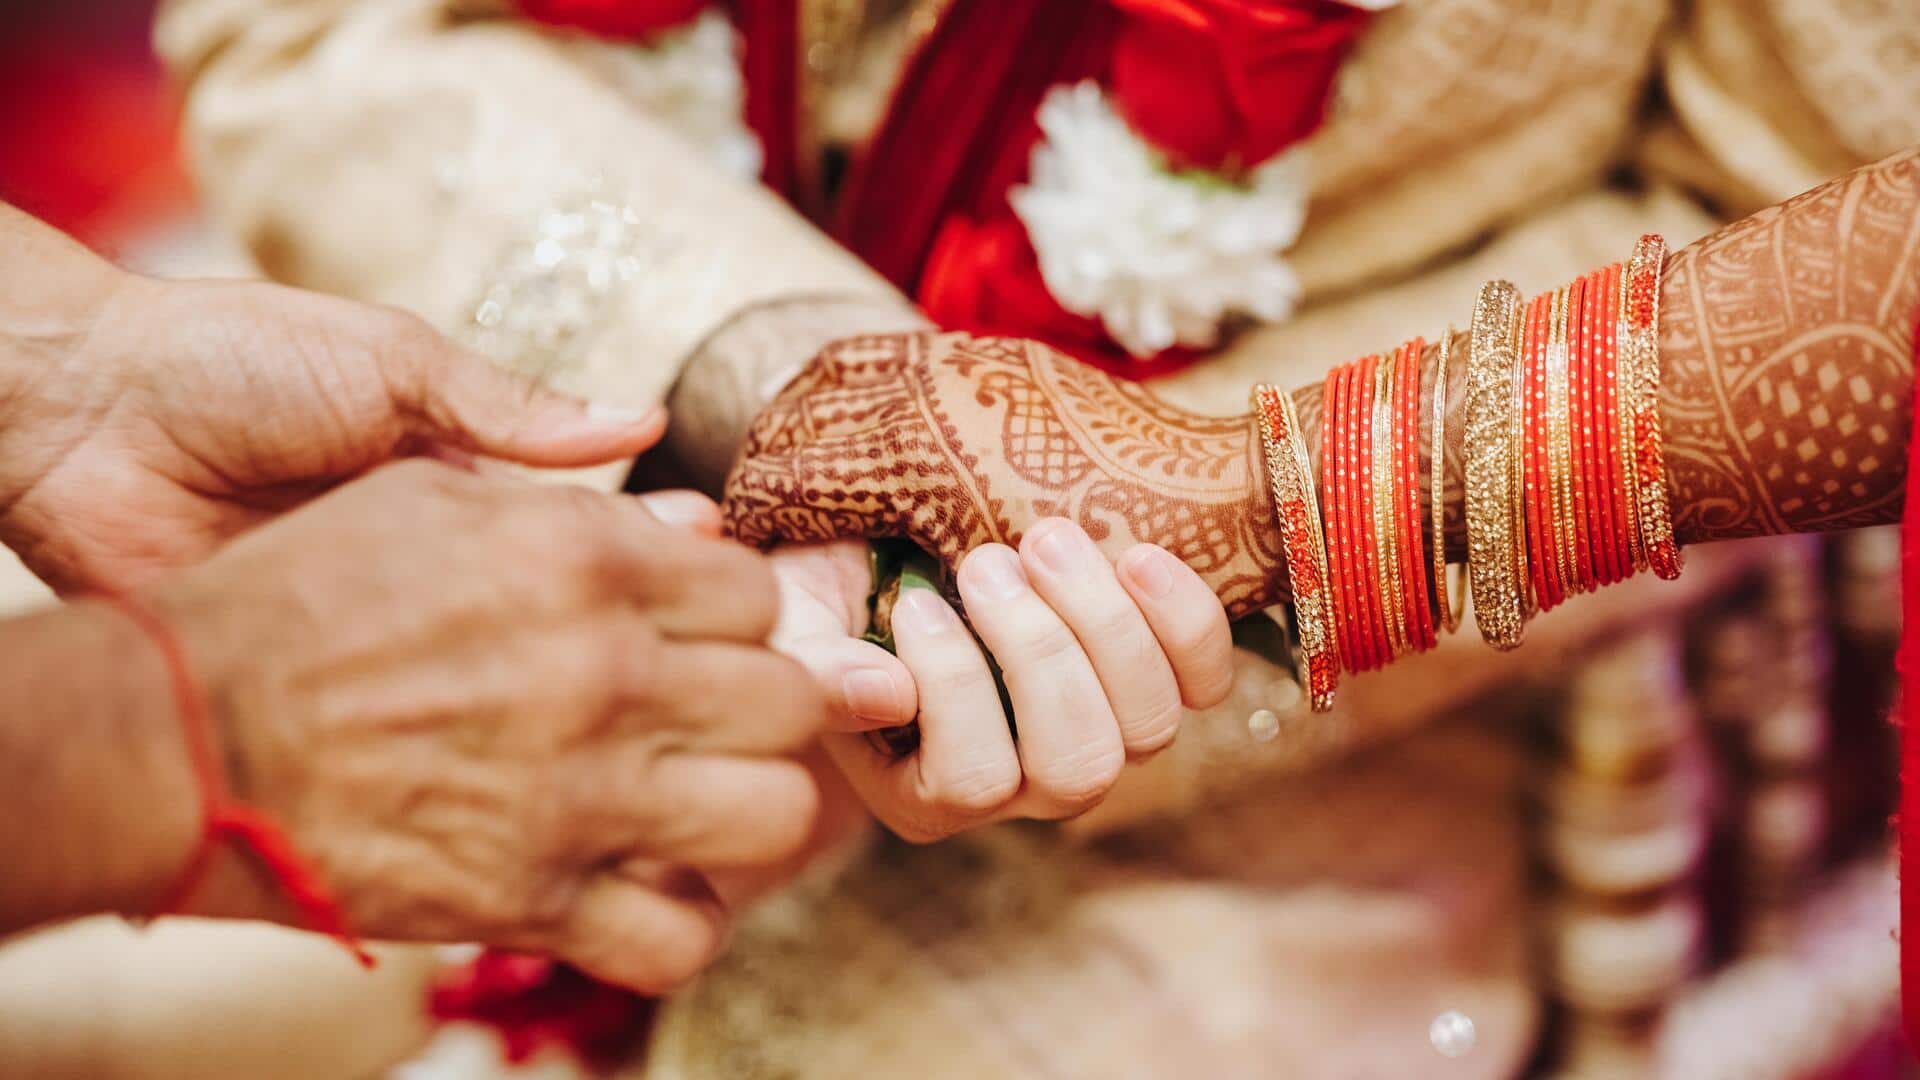 राजस्थान में निभाई जाती है अनोखी परंपरा, 2 लड़कों की आपस में होती है शादी